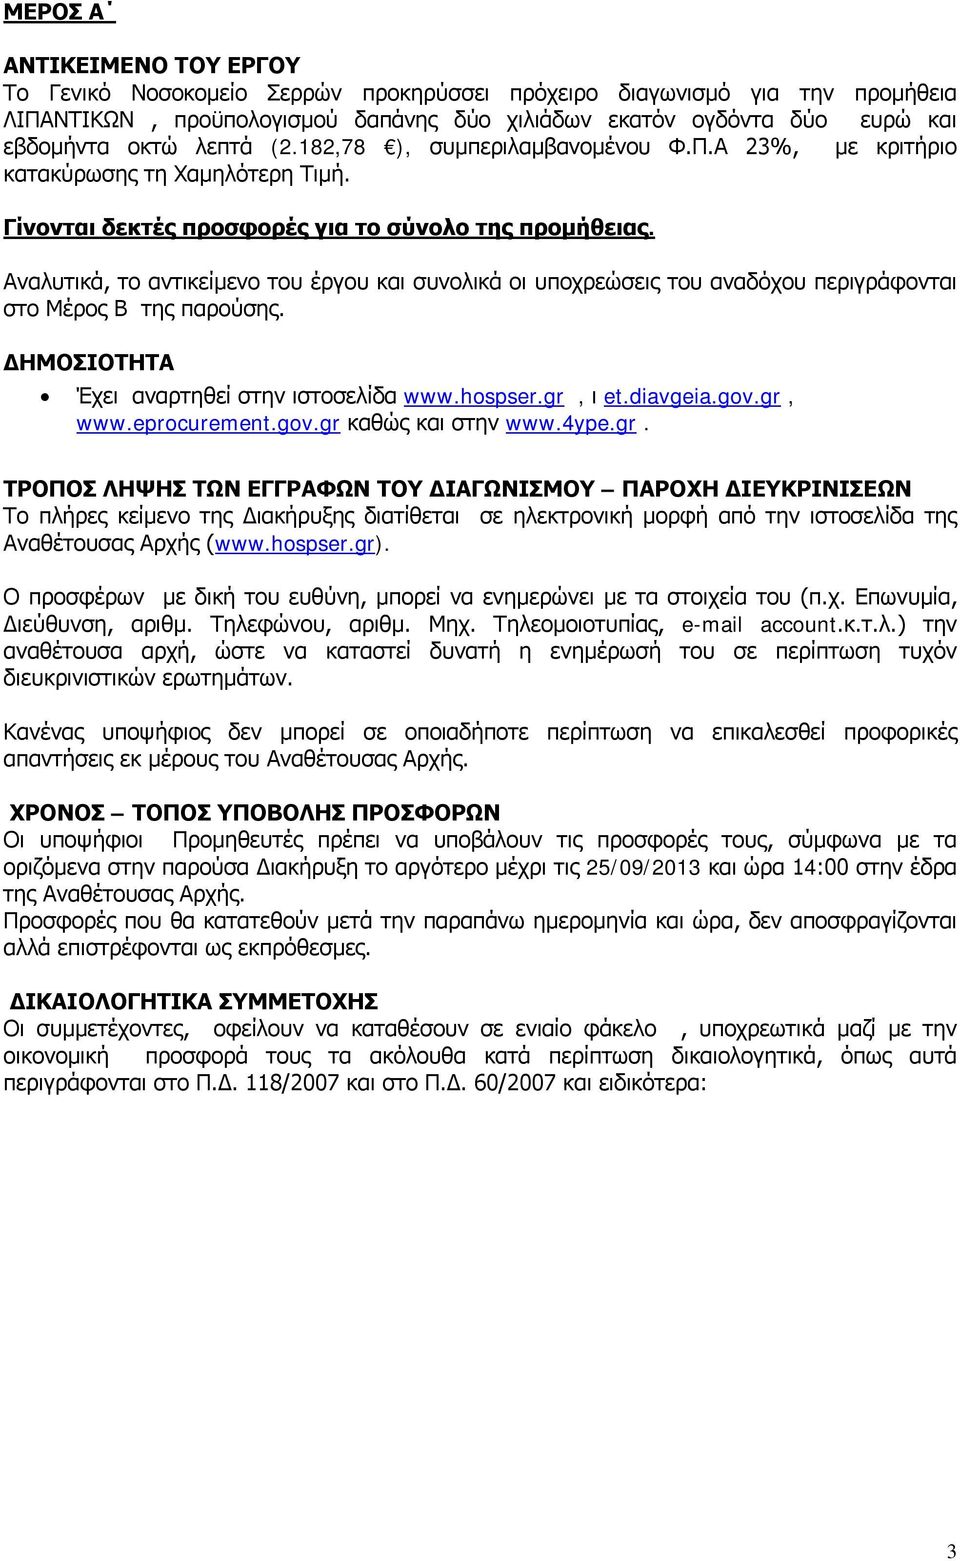 Αναλυτικά, το αντικείμενο του έργου και συνολικά οι υποχρεώσεις του αναδόχου περιγράφονται στο Μέρος Β της παρούσης. ΔΗΜΟΣΙΟΤΗΤΑ Έχει αναρτηθεί στην ιστοσελίδα www.hospser.gr, ι et.diavgeia.gov.